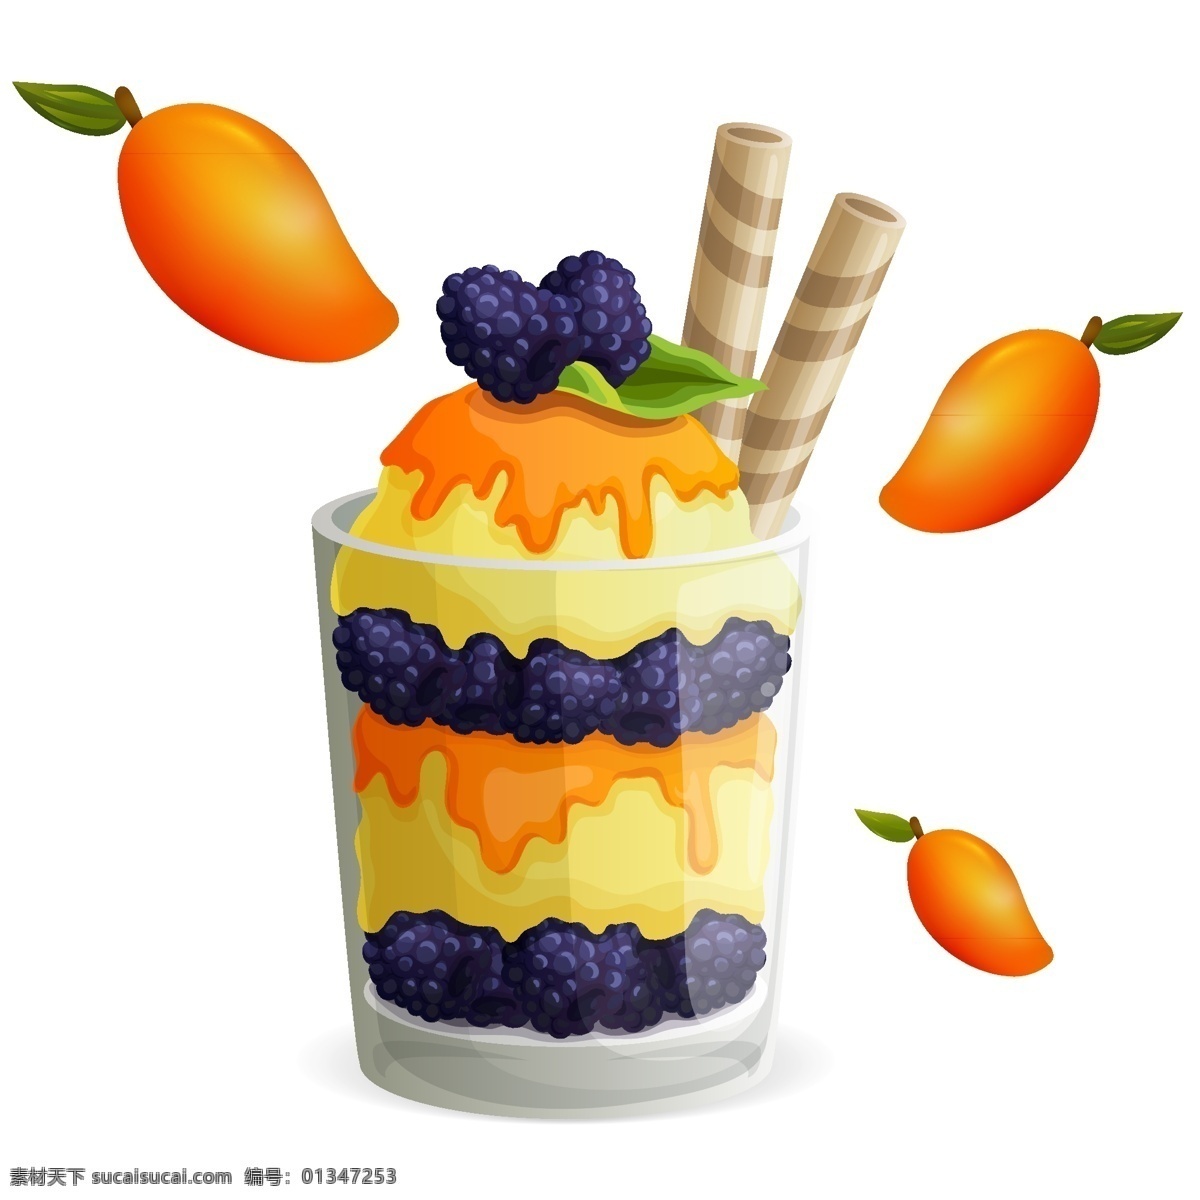 芒果 冰淇淋 冰激凌 贵妇人 圣代 泡 芙 优格 雪糕 一个 樱桃 紫色 节日 橙色 水果